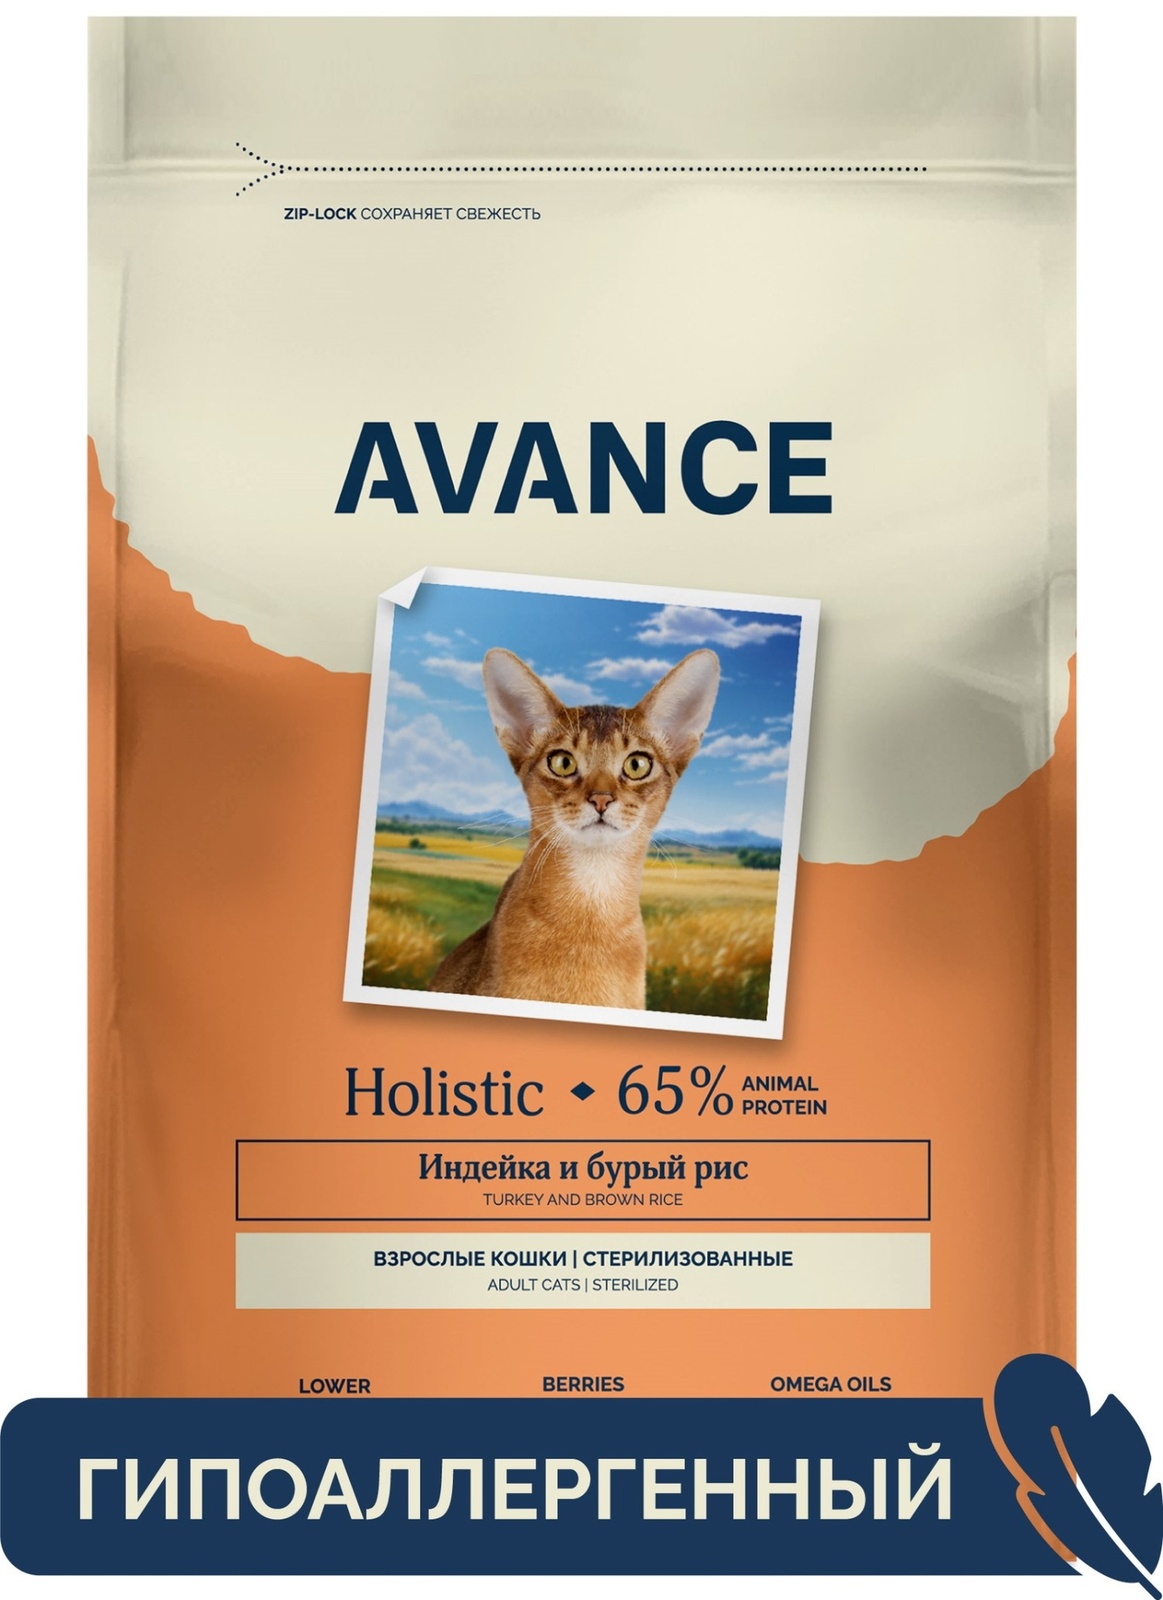 AVANCE полнорационный сухой корм для стерилизованных кошек с индейкой и бурым рисом (400 гр) AVANCE полнорационный сухой корм для стерилизованных кошек с индейкой и бурым рисом (400 гр) - фото 1